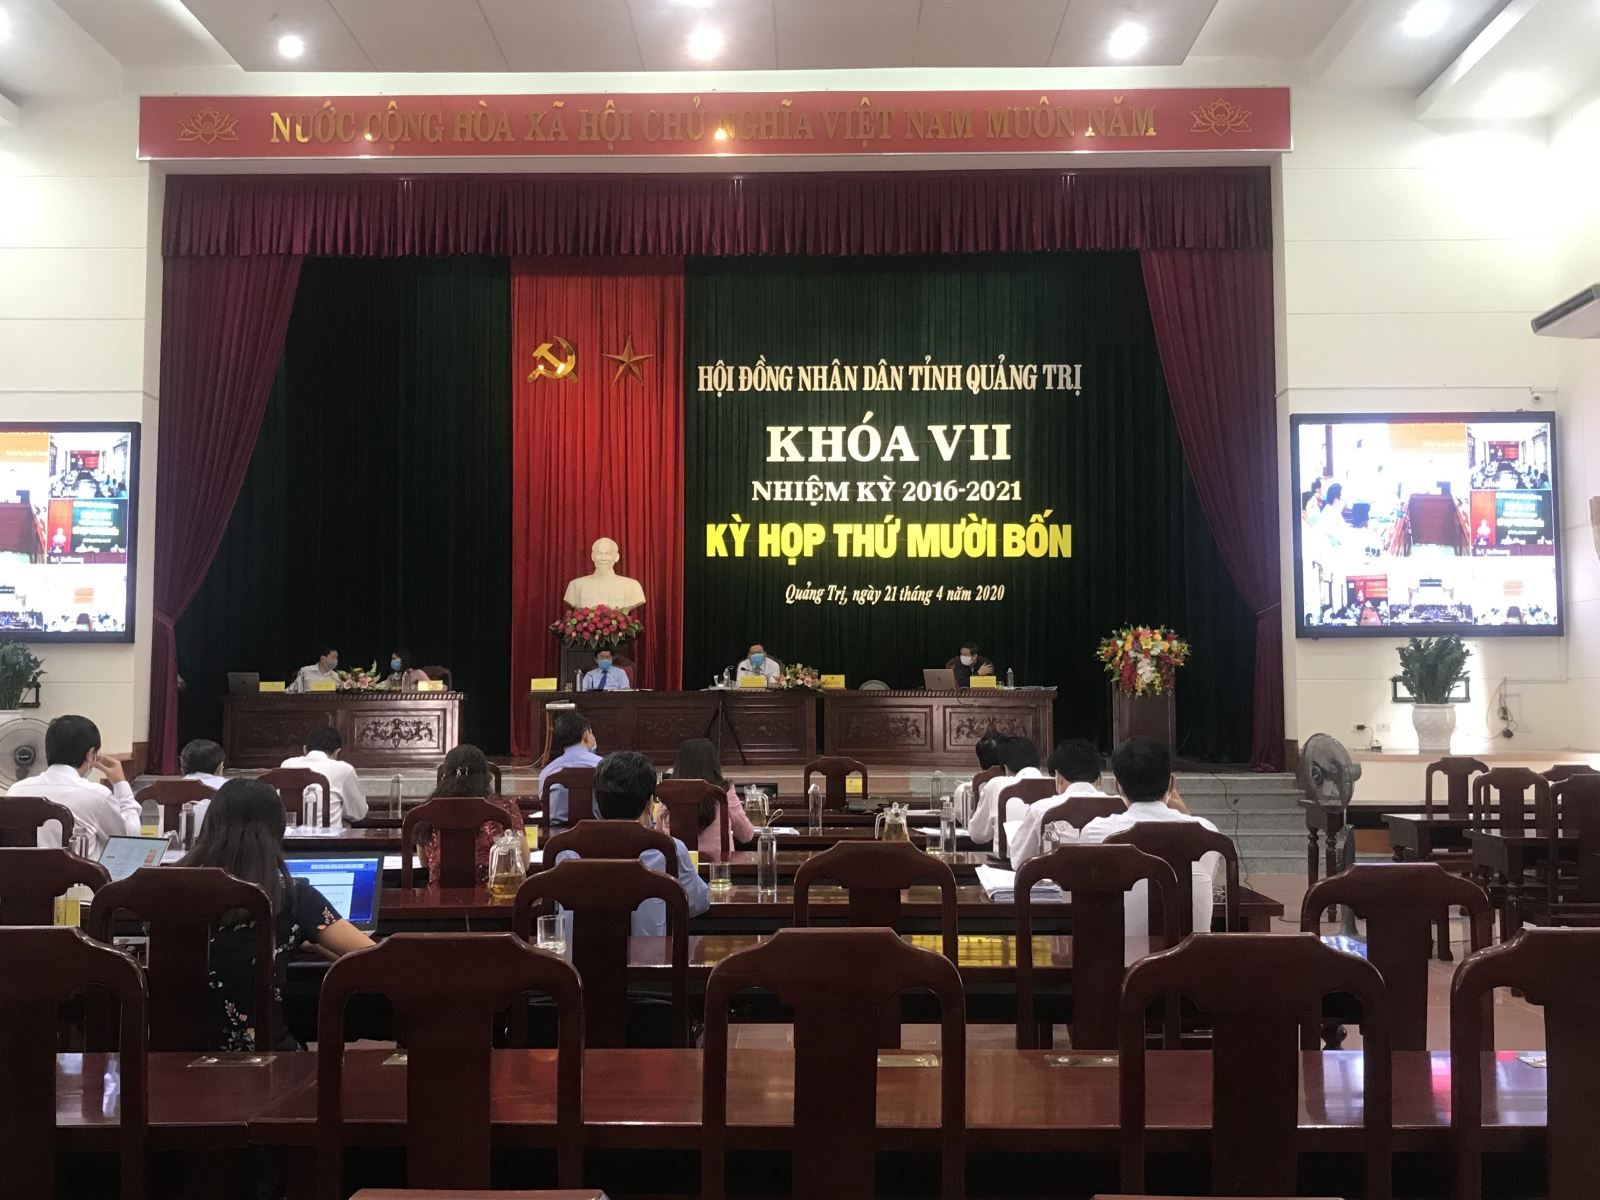 Khai mạc kỳ họp thứ 14 HĐND tỉnh Quảng Trị khóa VII